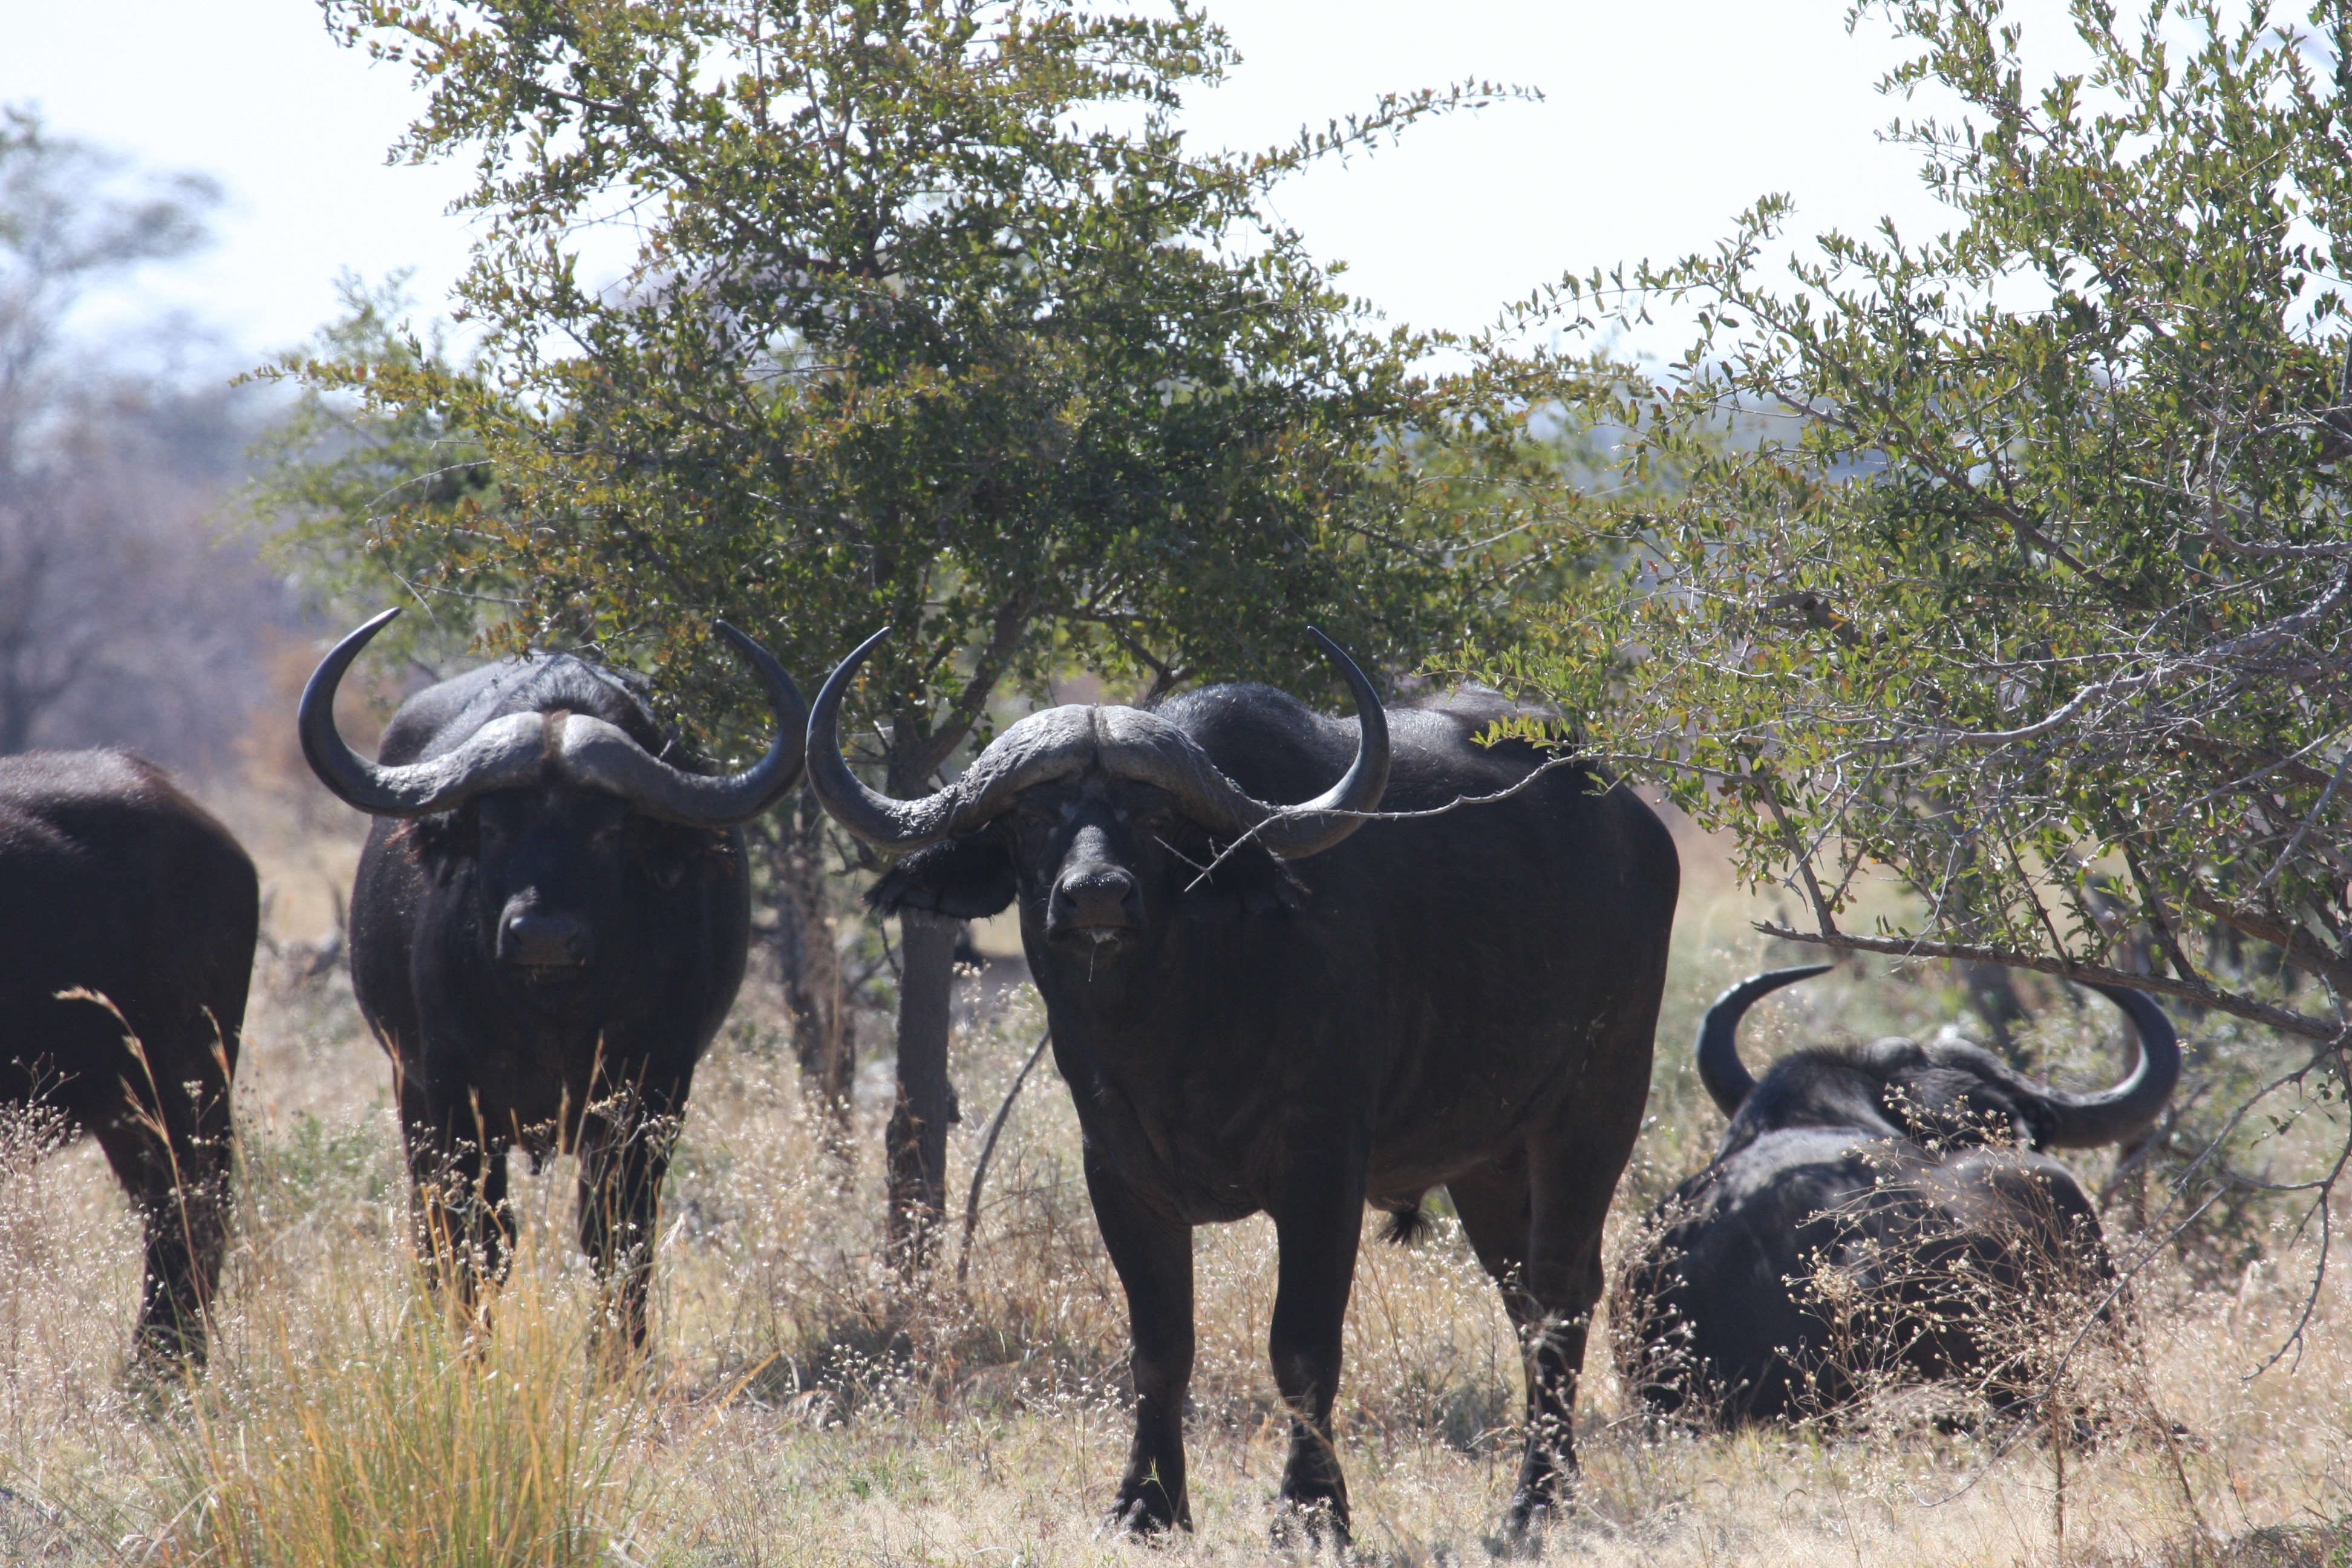 Wild Animals, Bison, Africa, animal wildlife, animals in the wild